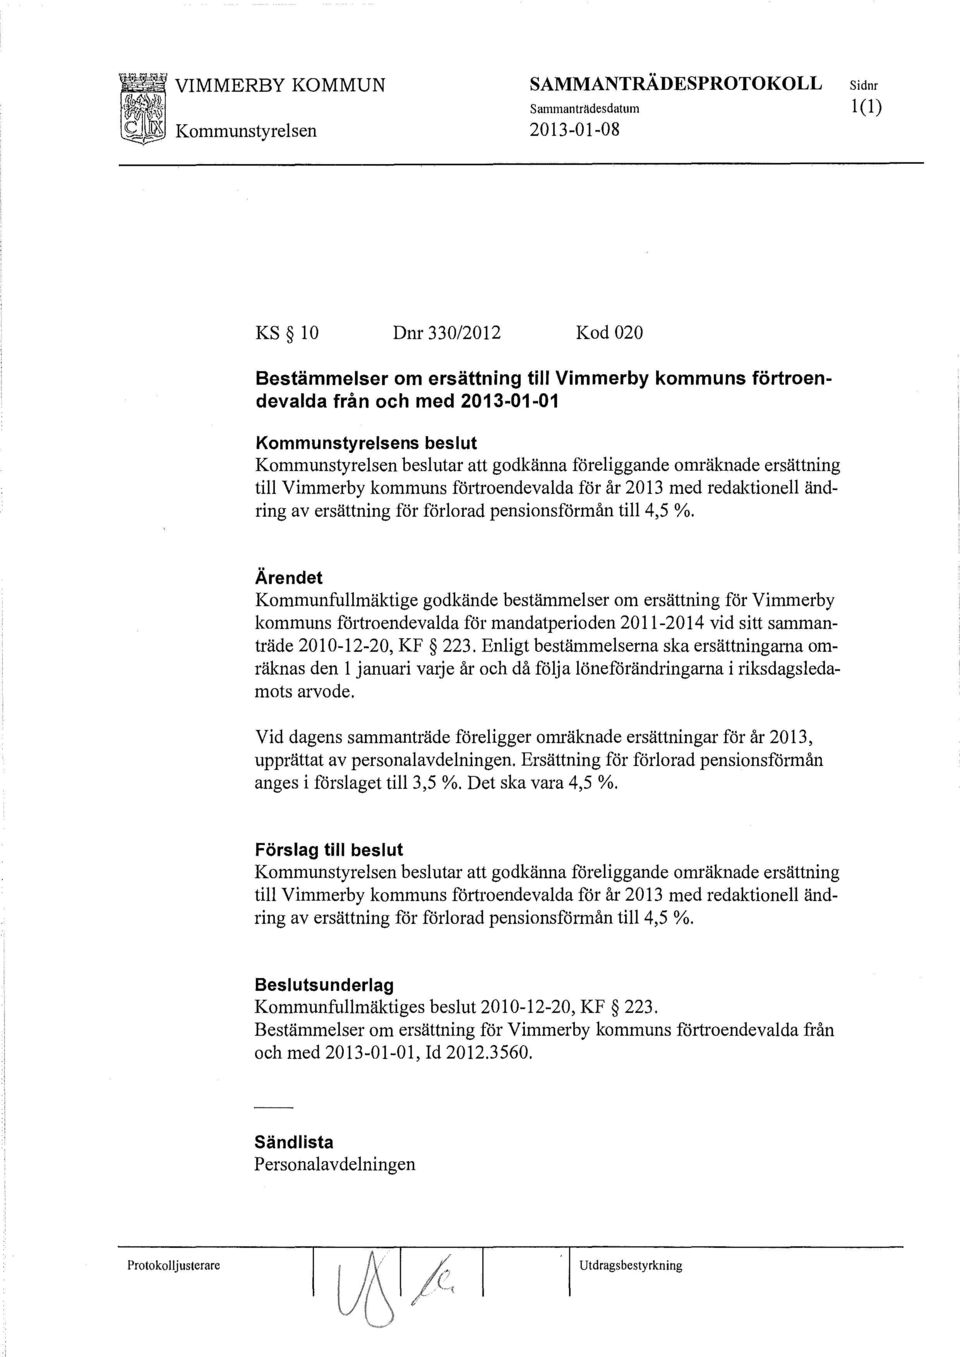 Ärendet Kommunfullmäktige godkände bestämmelser om ersättning för Vimmerby kommuns förtroendevalda för mandatperioden 2011-2014 vid sitt sammanträde 2010-12-20, KF 223.